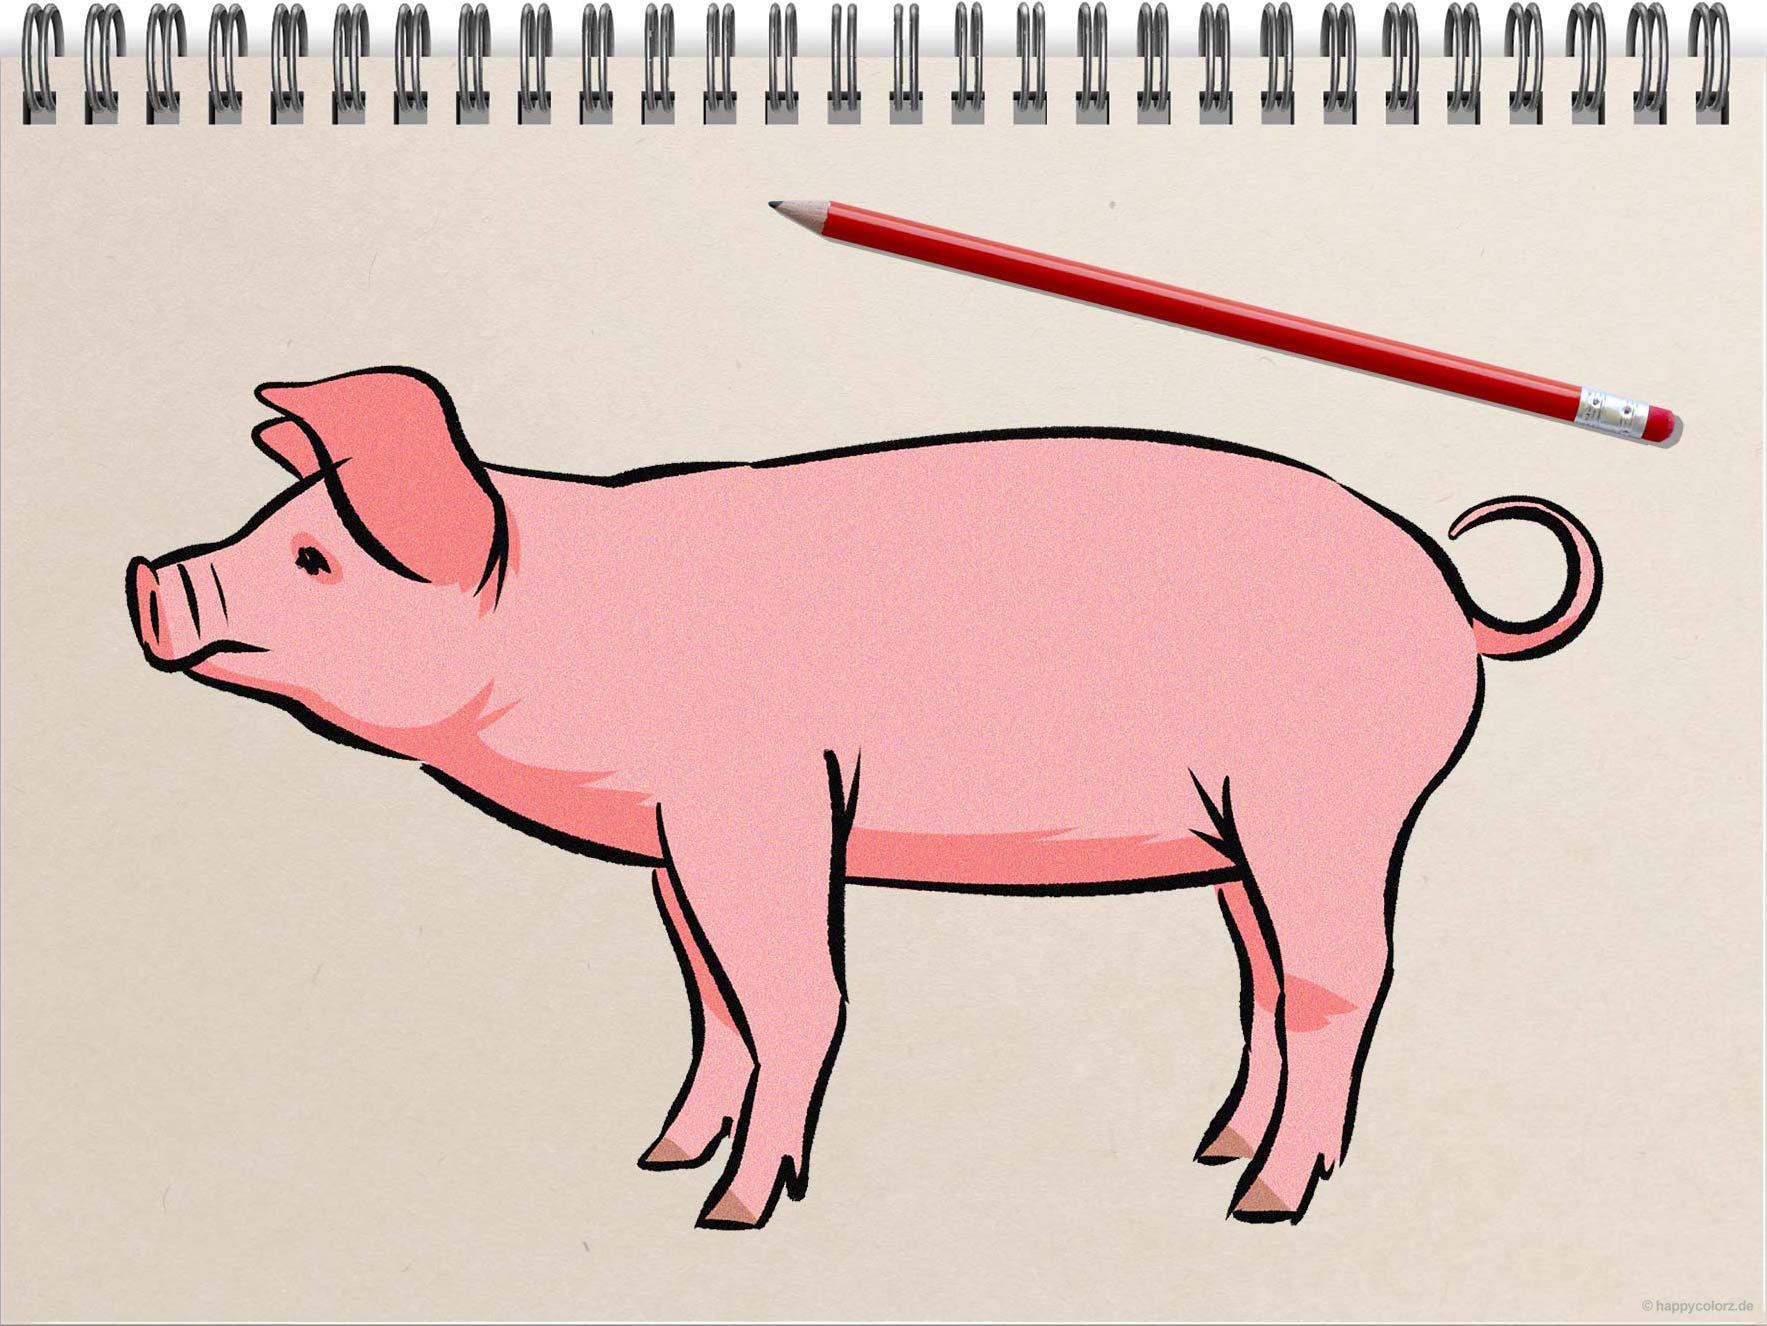 Schwein malen - Schritt-für-Schritt Anleitung mit Vorlagen